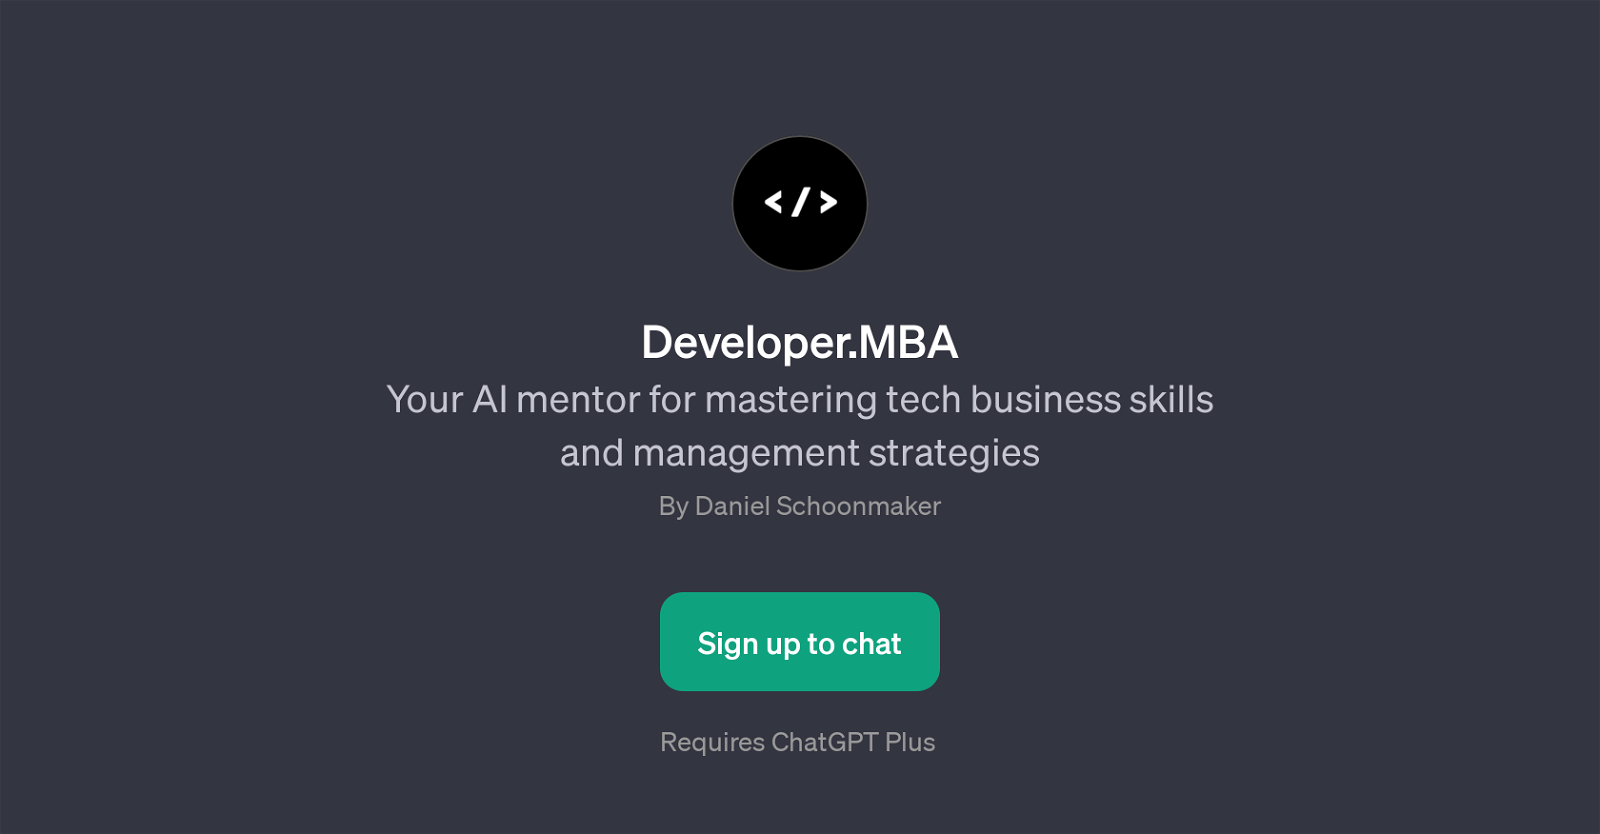 Developer.MBA website